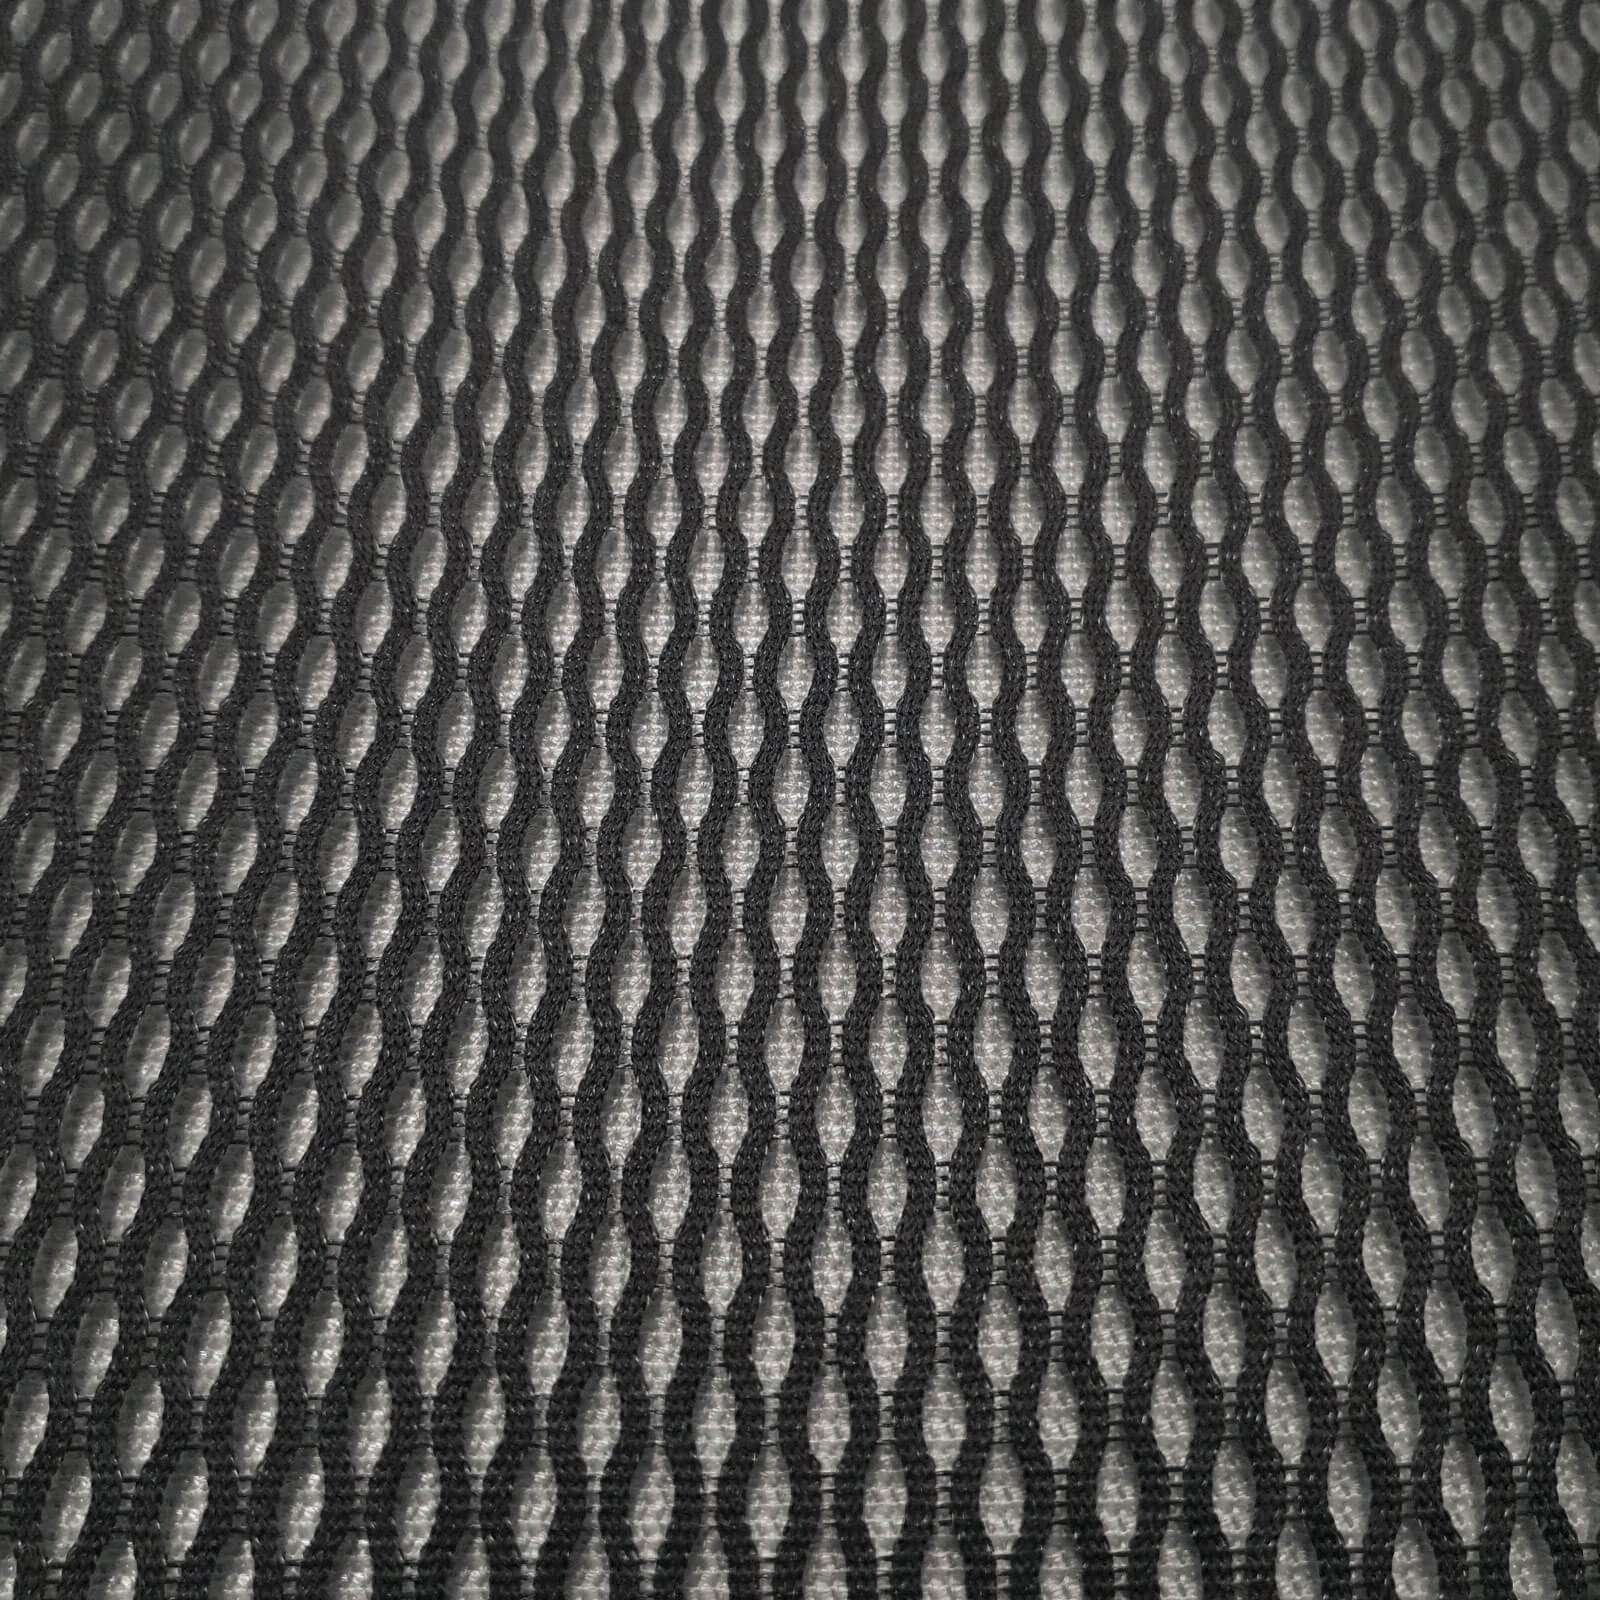 Galaxy Mesh - Spacer fabric (3D mesh fabric Air Mesh)